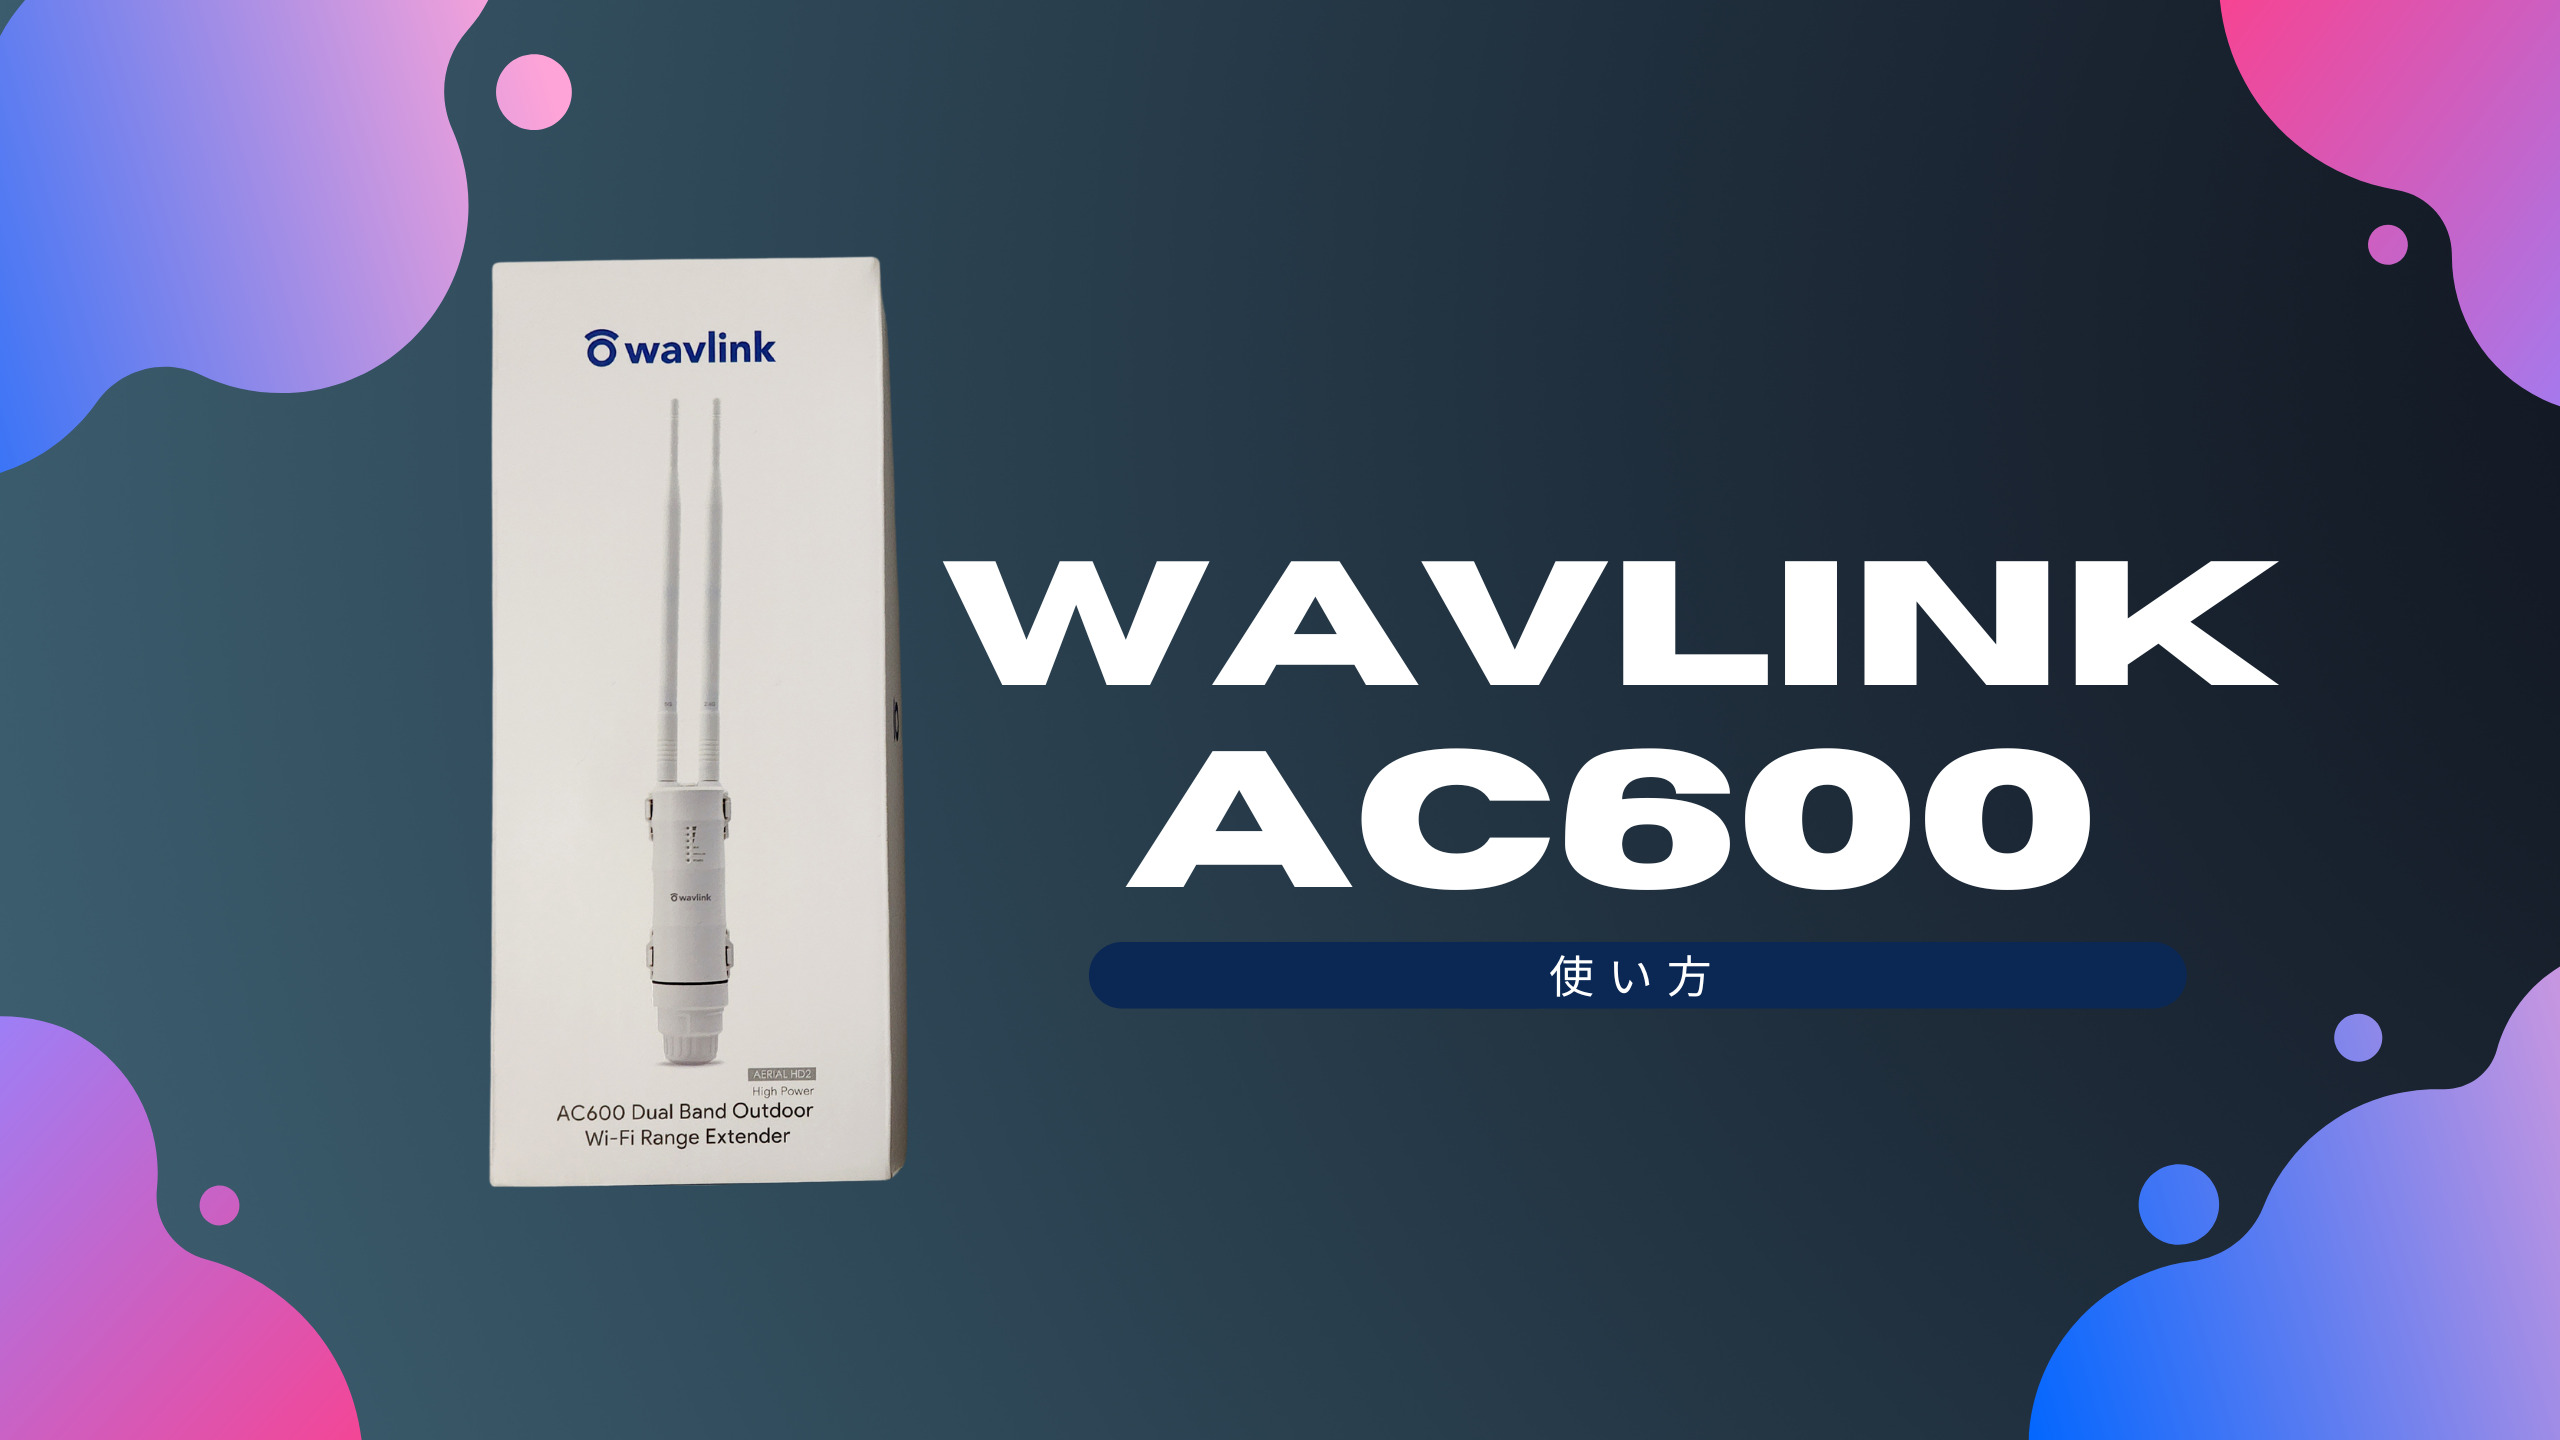 WAVLINK WIFI中継器 AC600 デュアルバンド 屋外用を試してみた ...